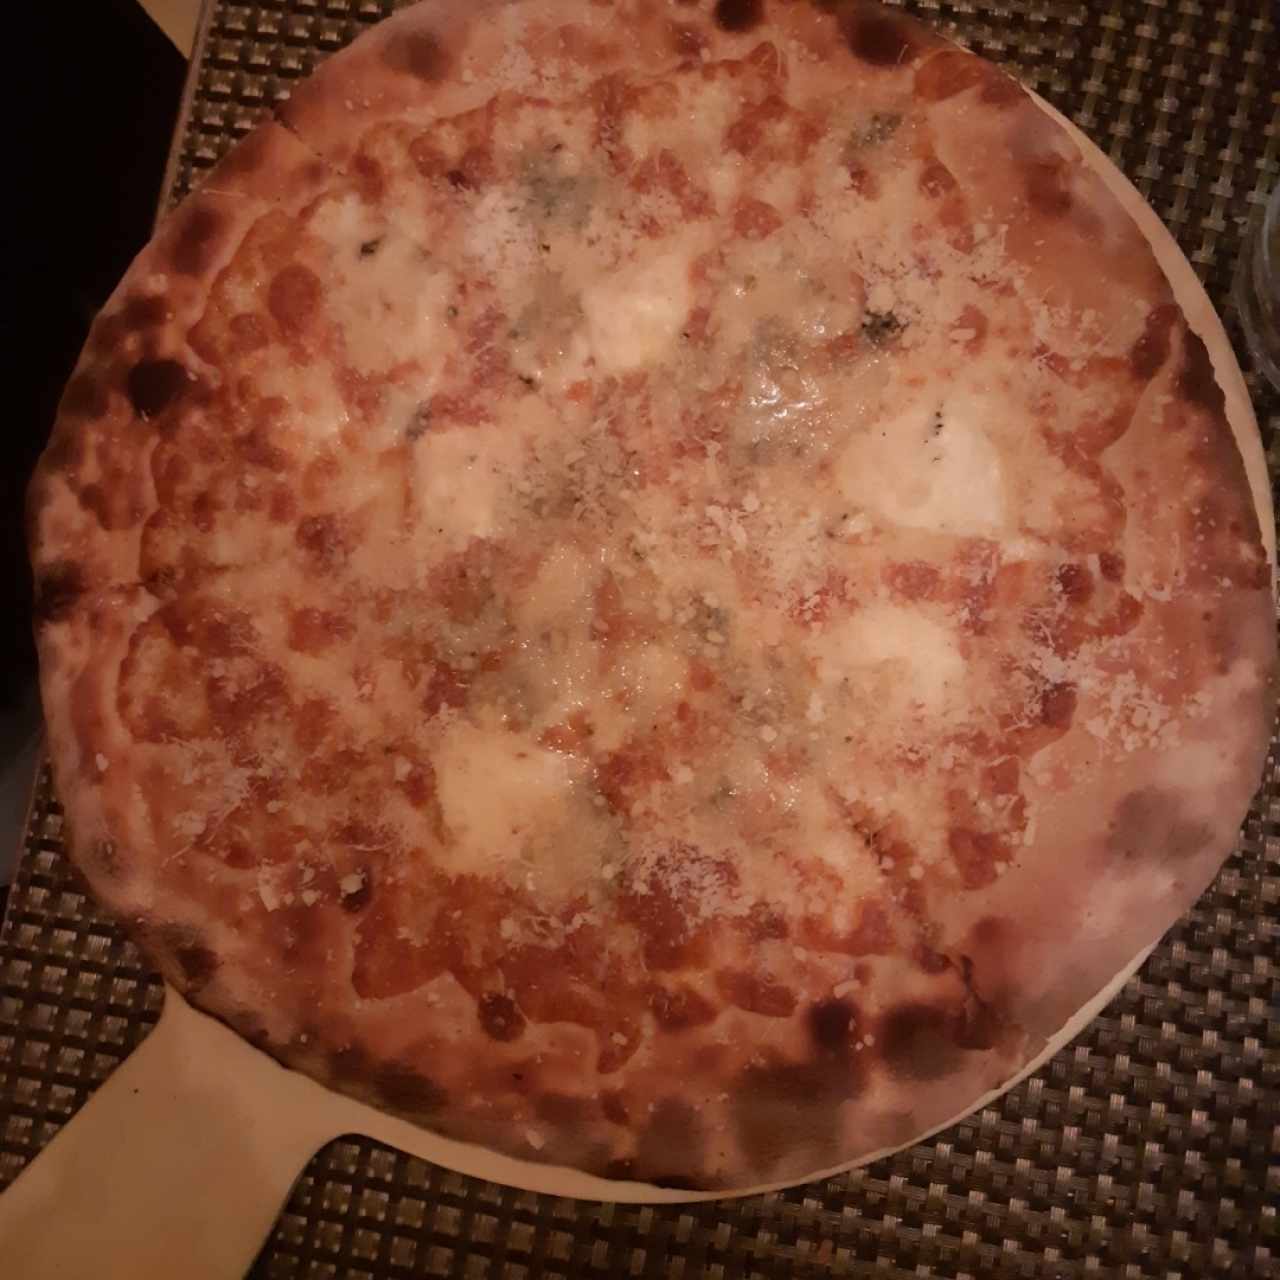 Pizzas - Quattro Stagioni